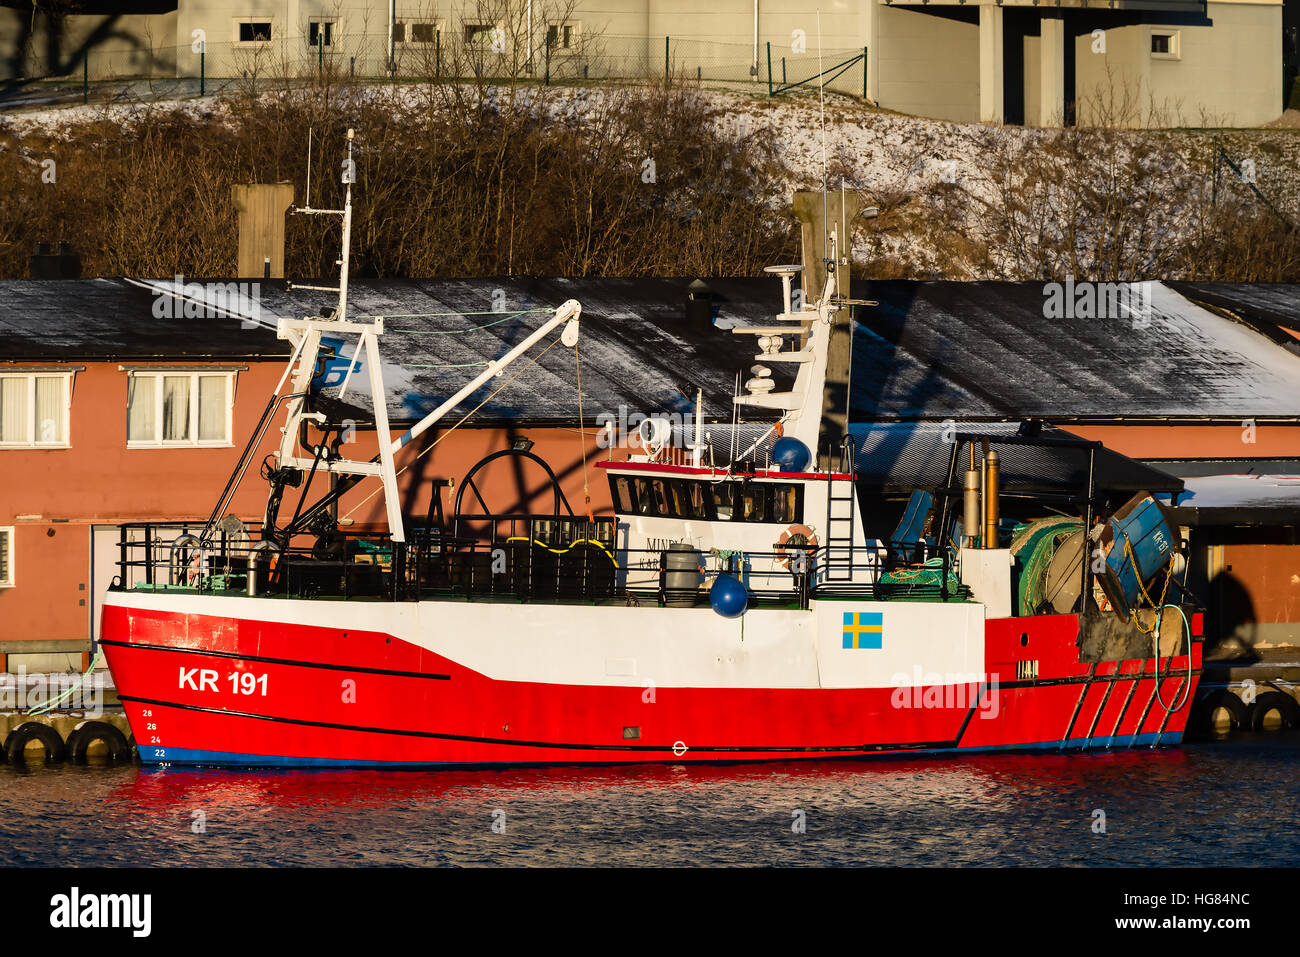 Karlskrona, Suède - 5 janvier 2017 : documentaire de l'industrie de la pêche. Le KR 191 bateau de pêche amarré quai de Saltö Mindy, port de Karlskrona. L'Indu Banque D'Images